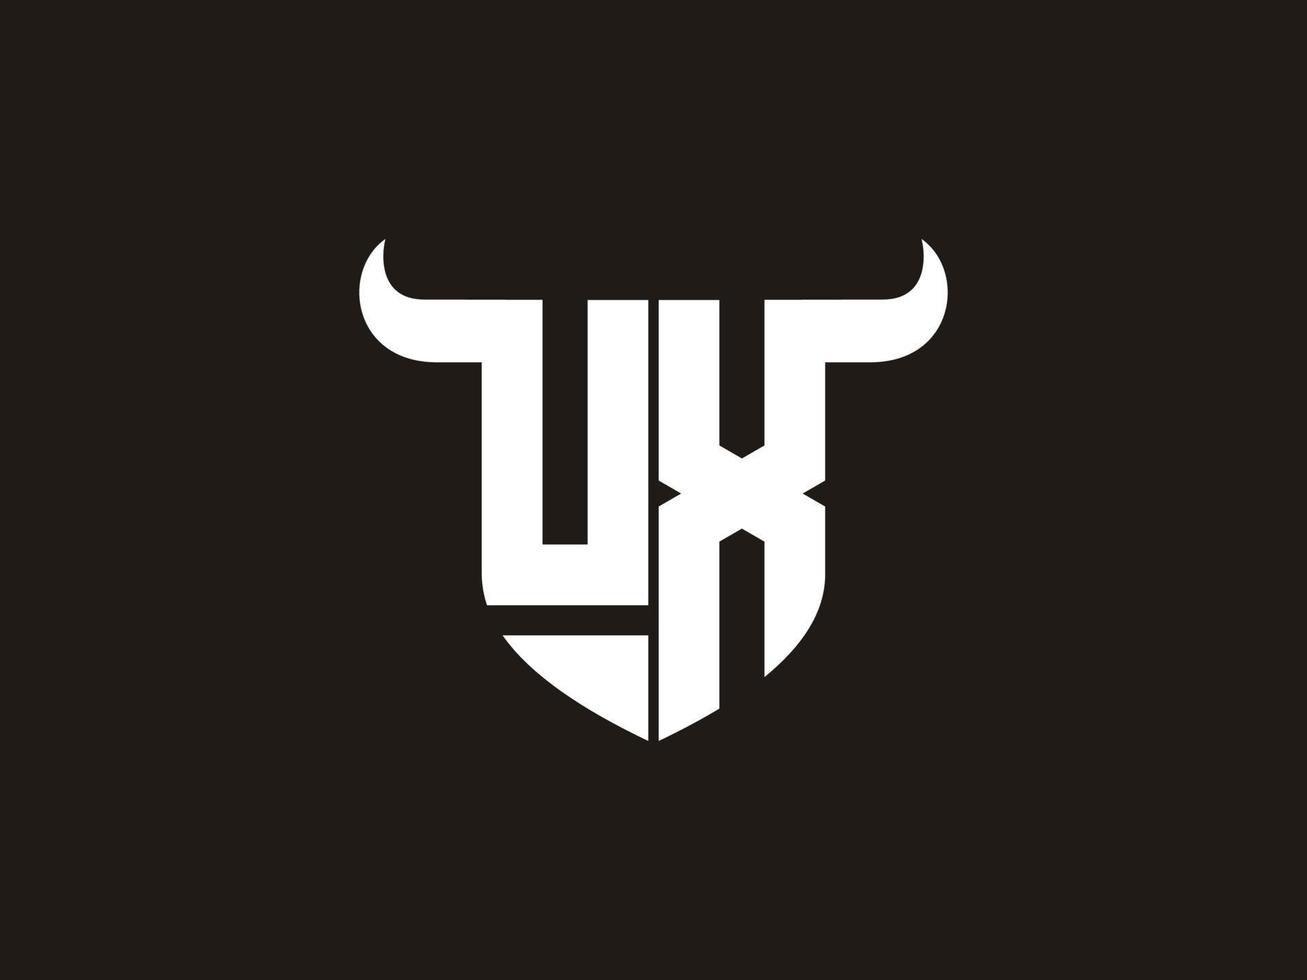 diseño inicial del logotipo del toro ux. vector